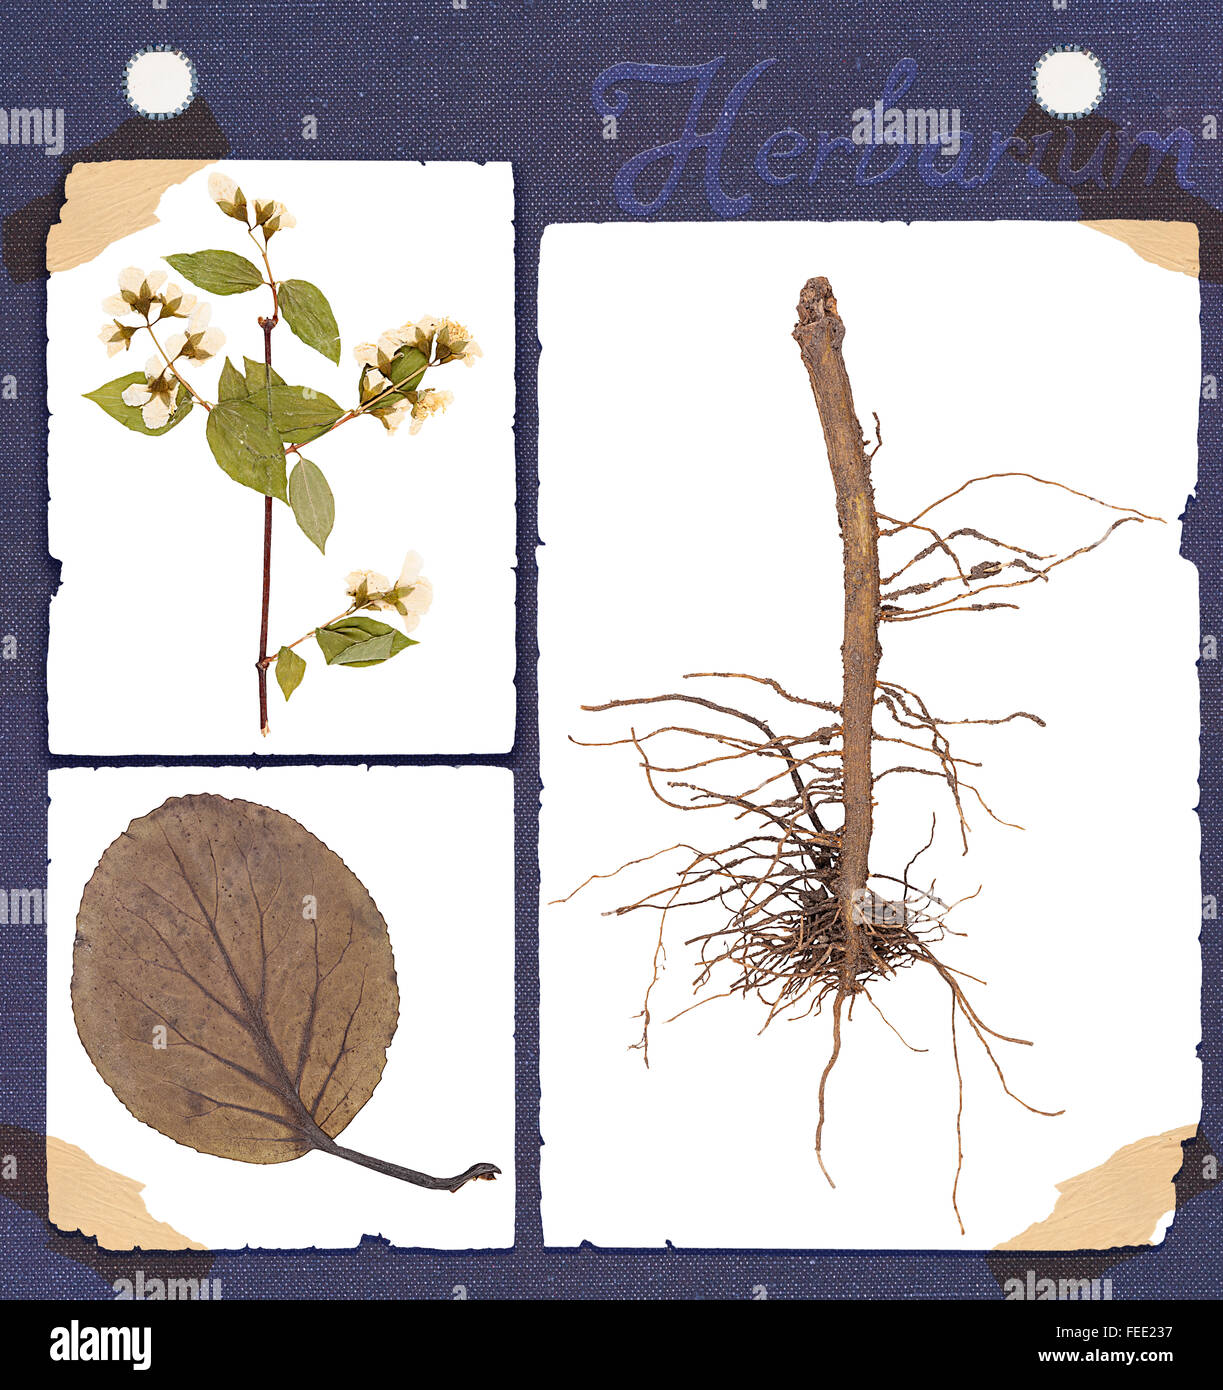 Conjunto de herbario partes constitutivas de la planta: raíz, hoja, flor, twig aislado Foto de stock